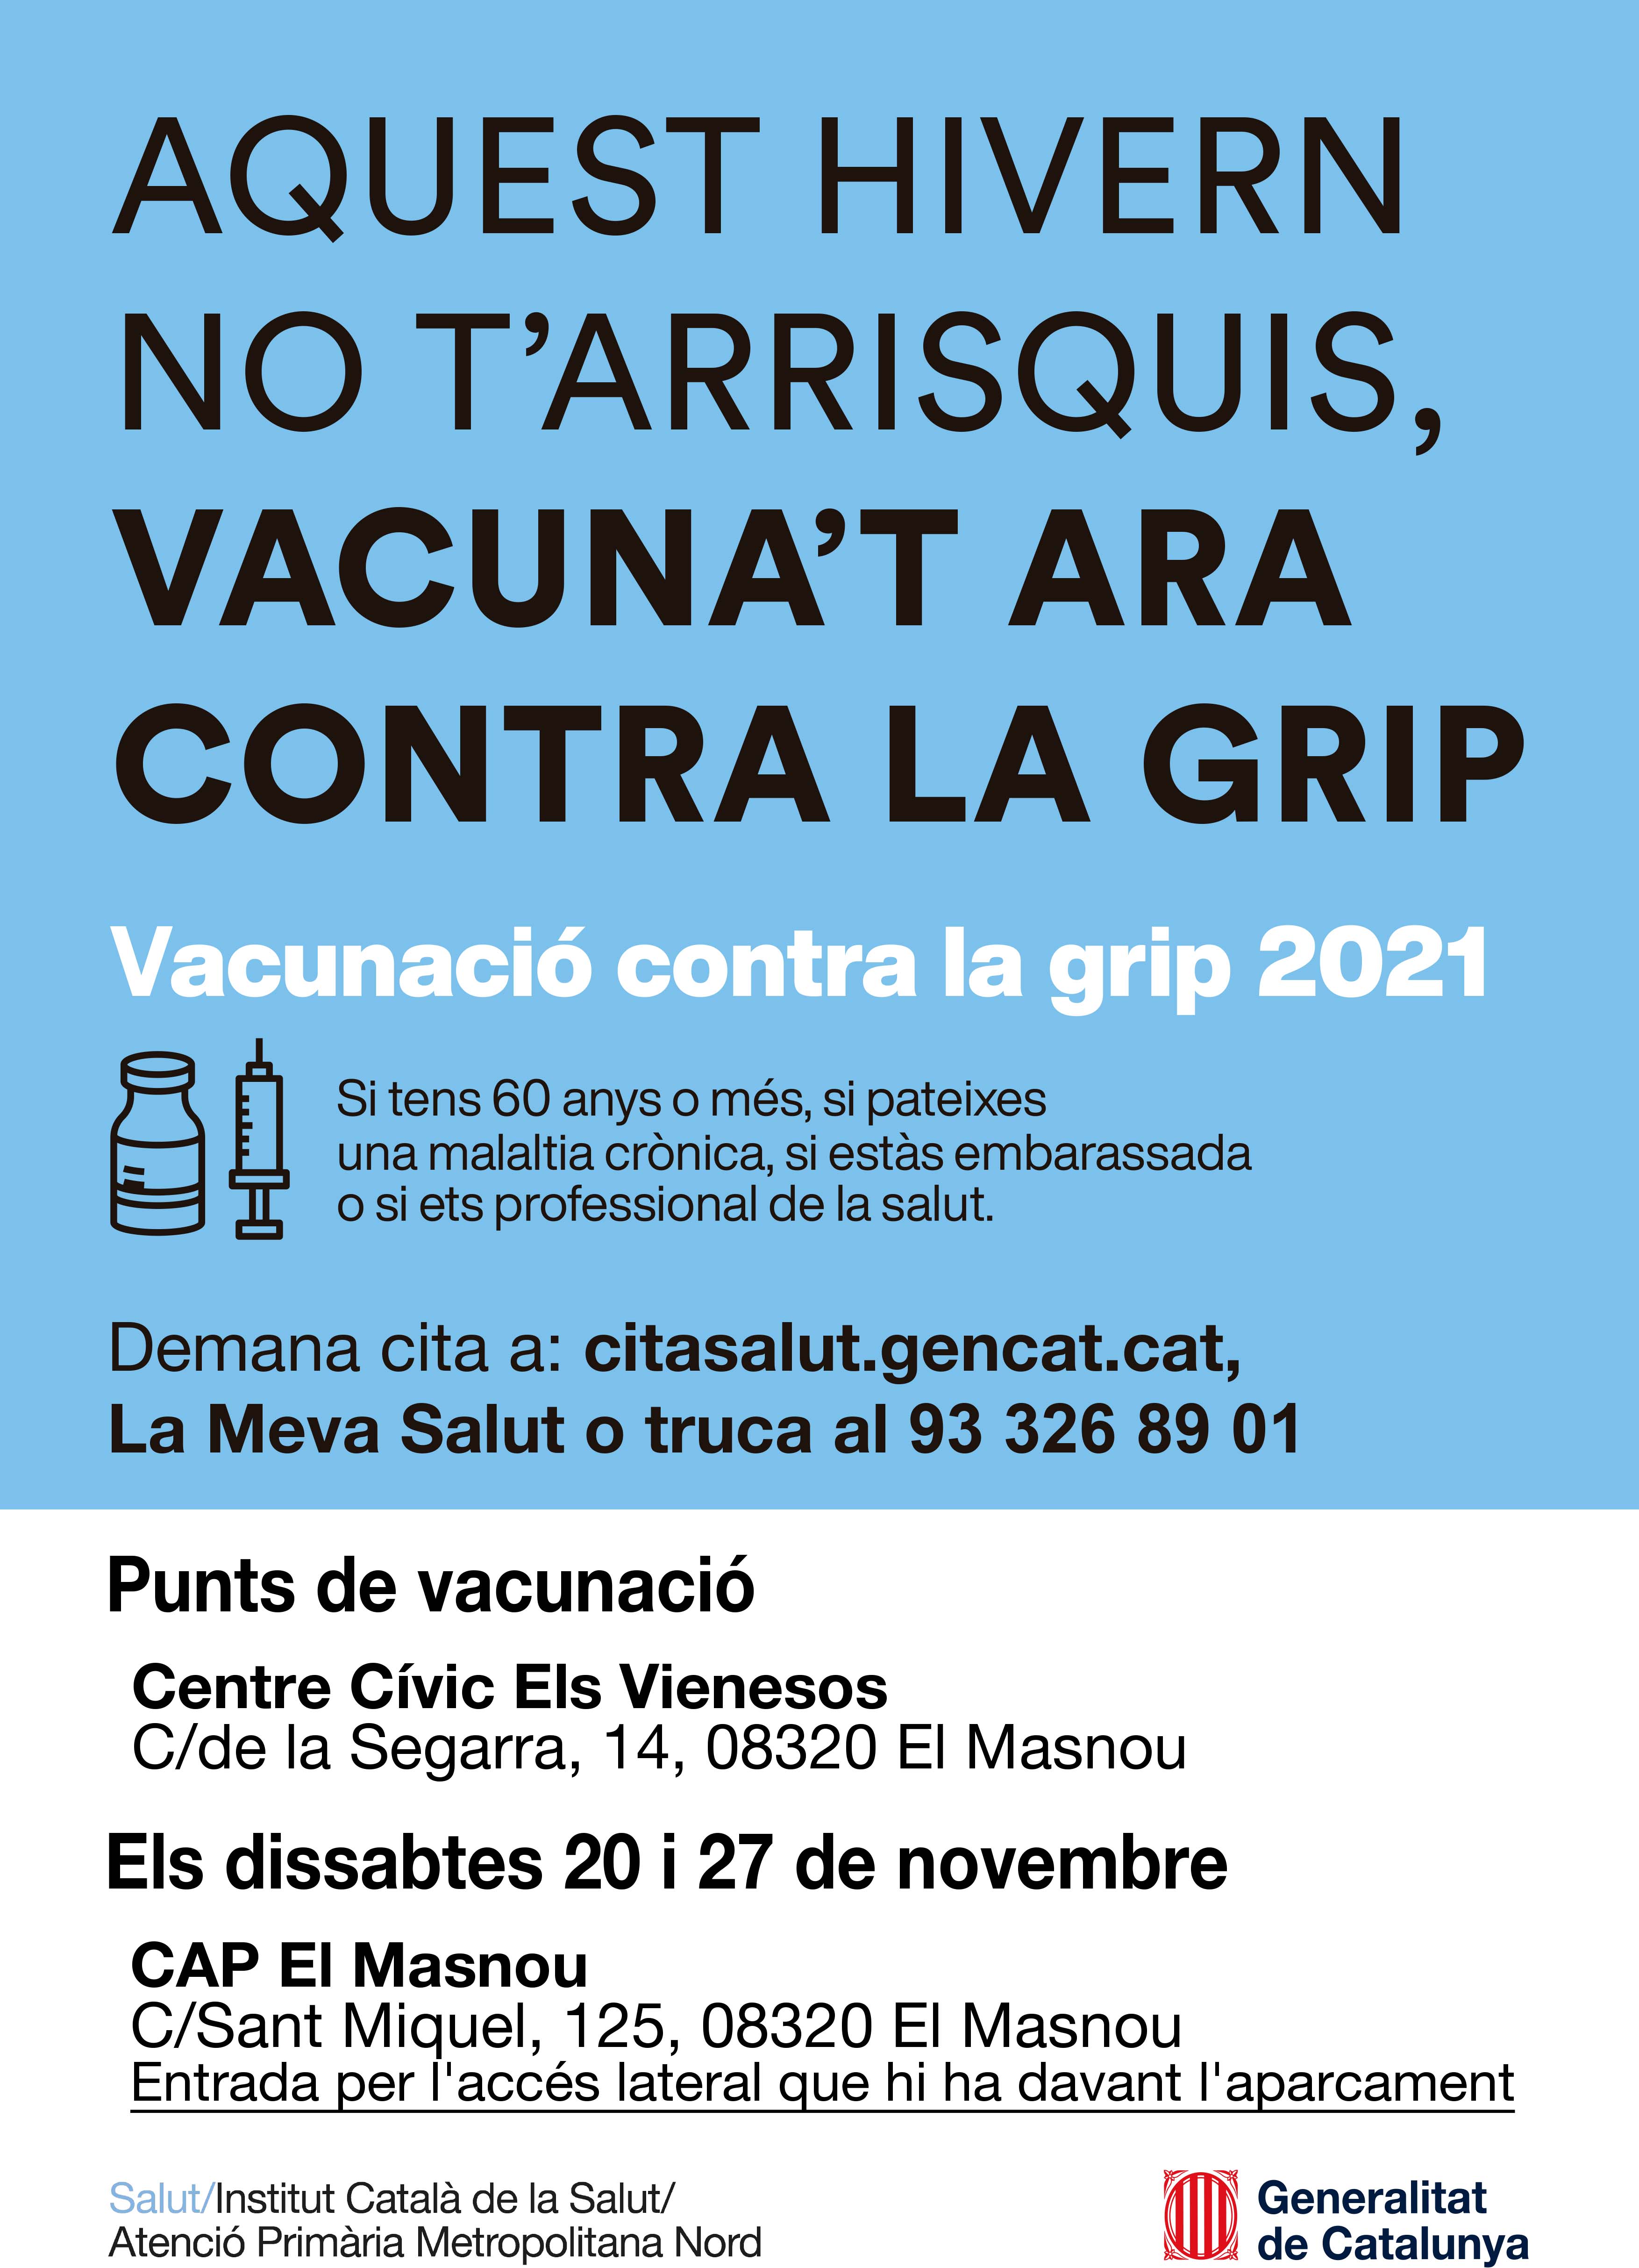 S�??habilita el CAP El Masnou com a punt de vacunació contra la grip els dissabtes 20 i 27 de novembre